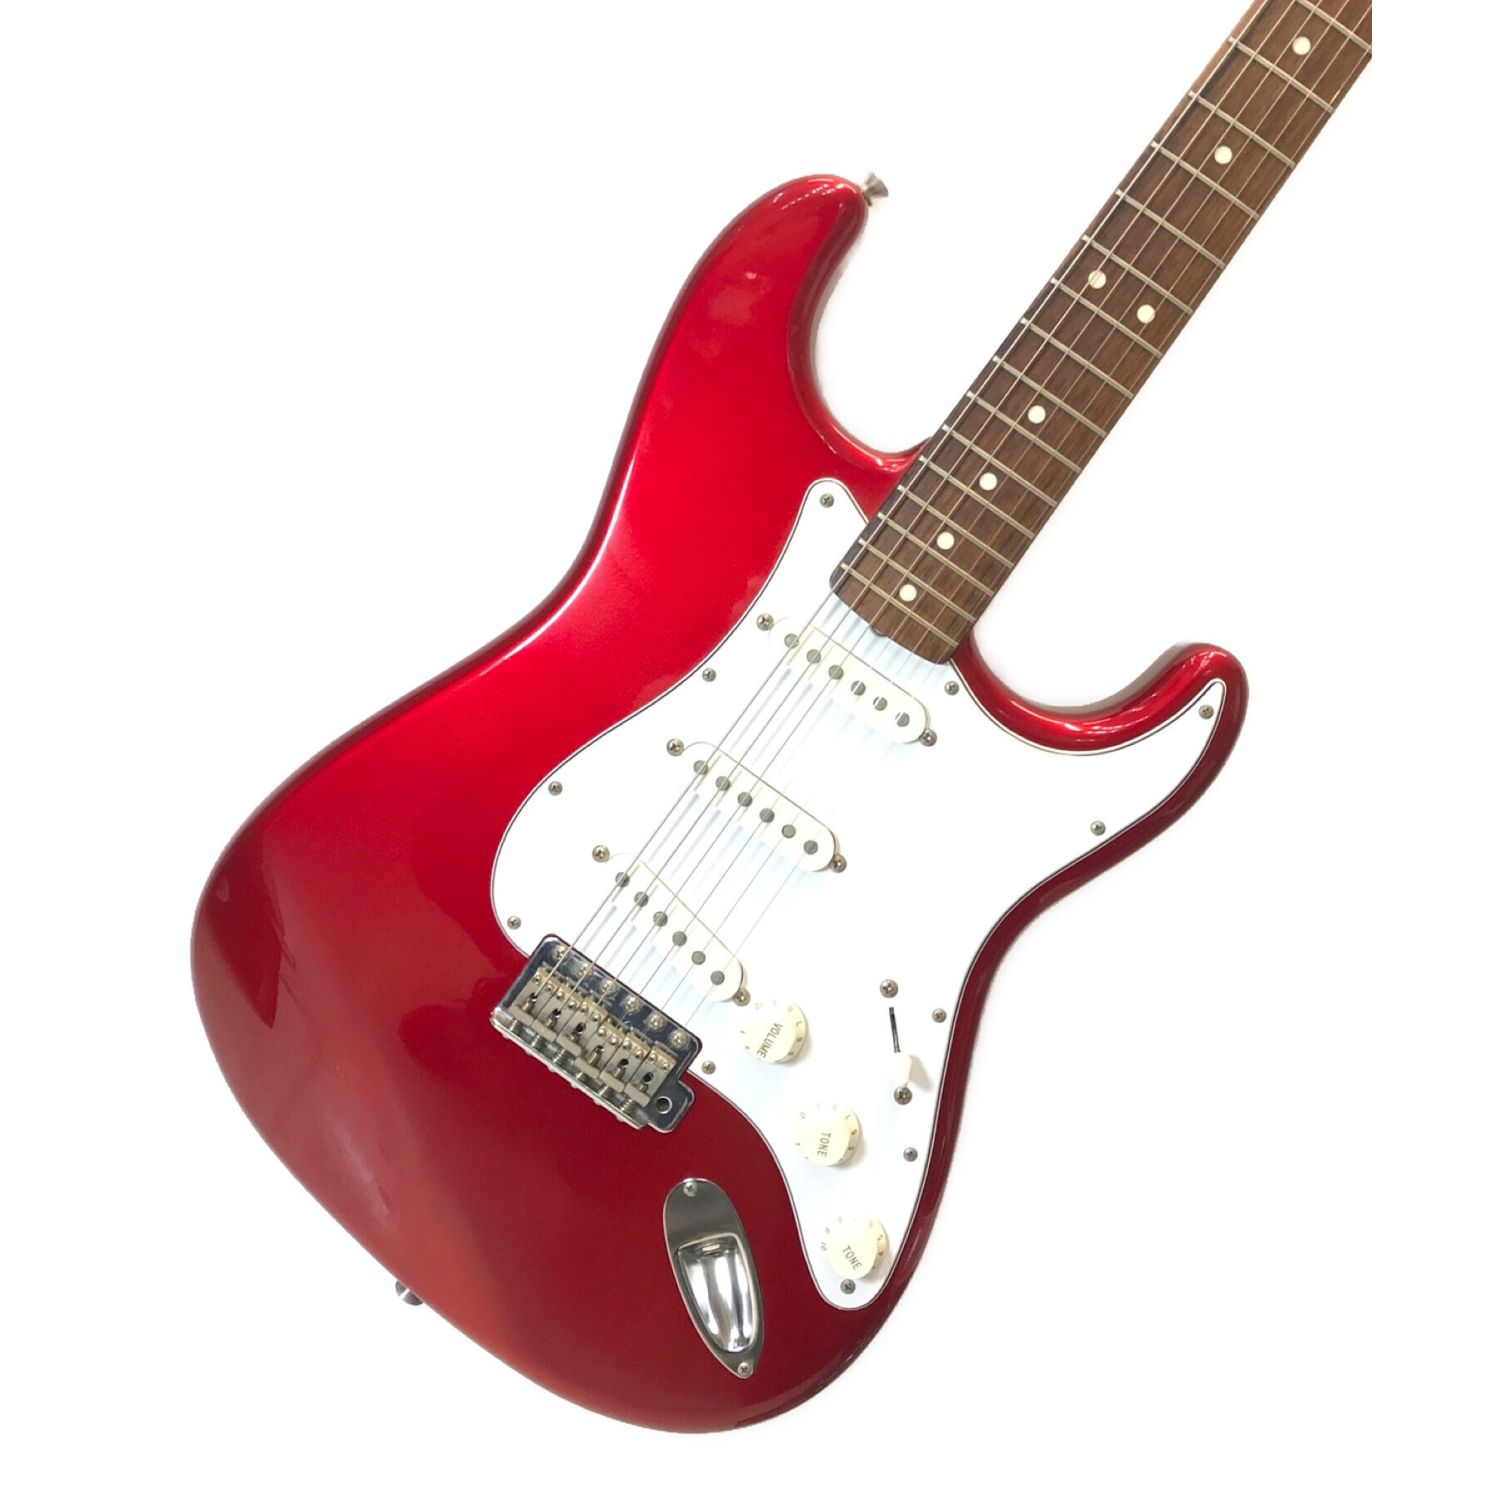 Fender Japanストラトキャスタータイプ エレキギター検索用fende - ギター